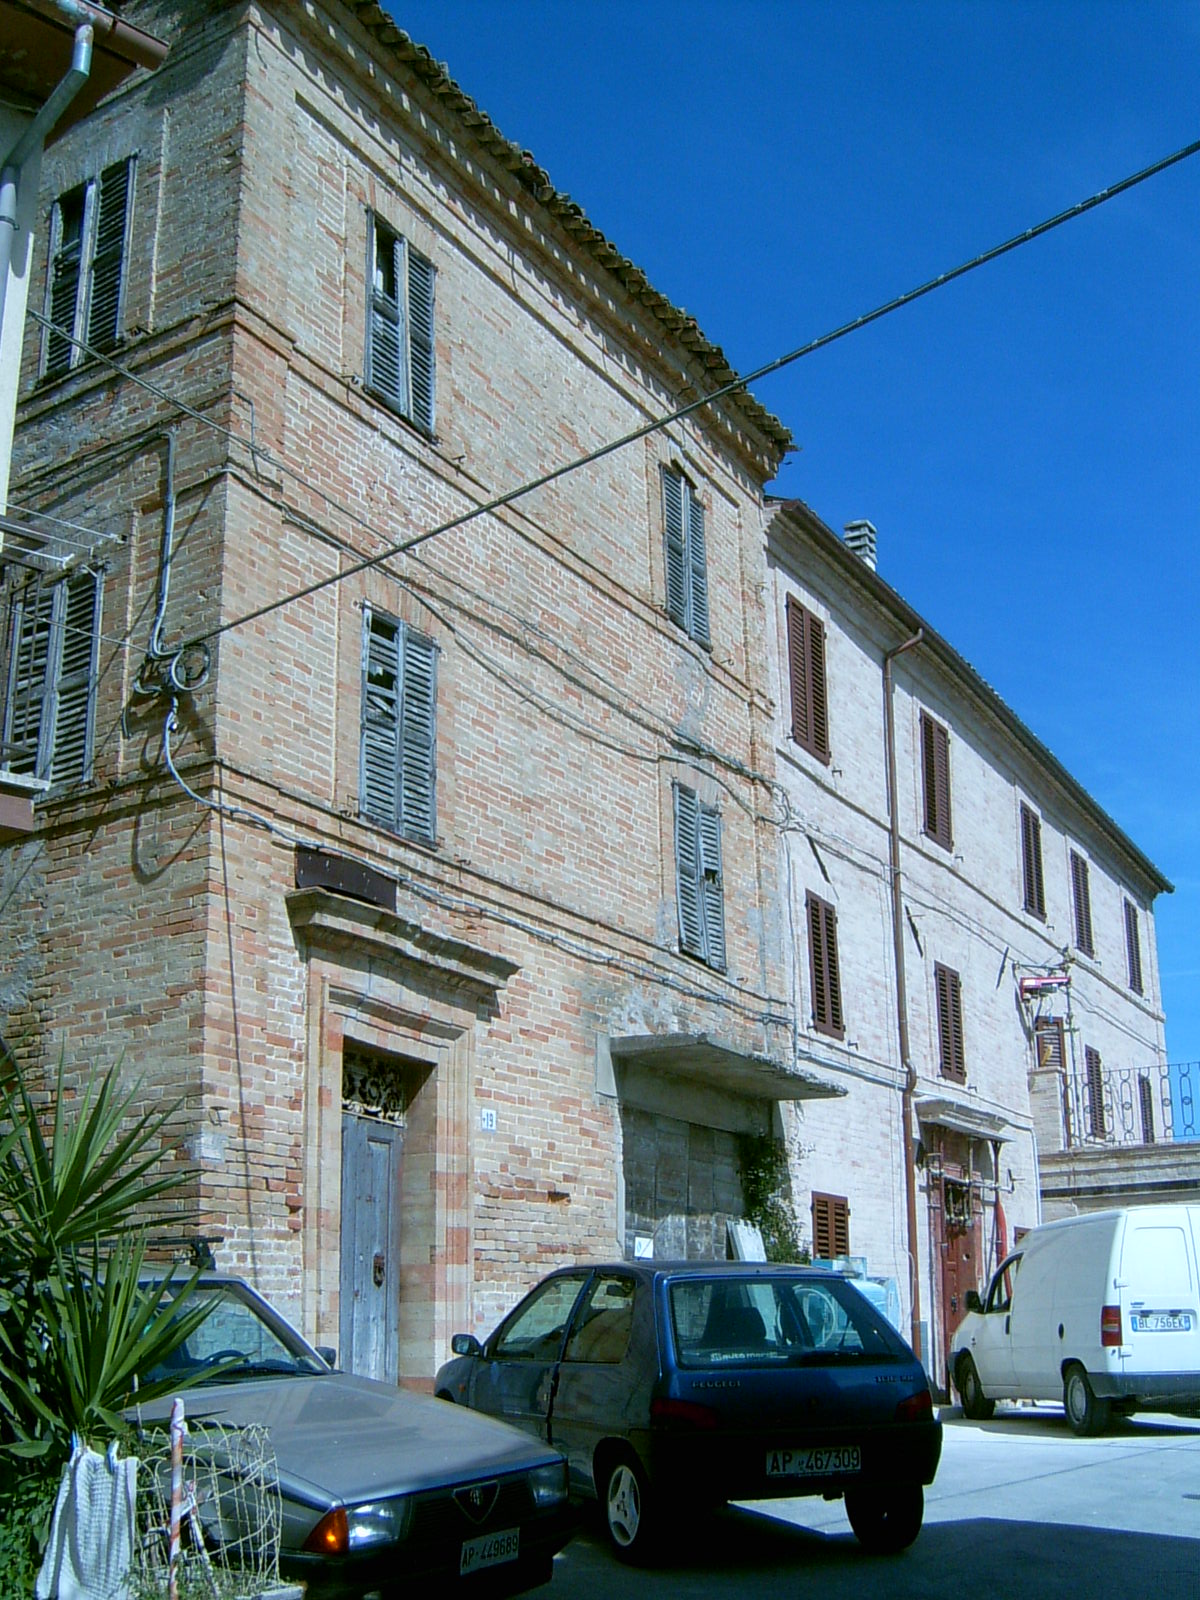 Palazzo nobiliare (palazzo, nobiliare) - Montappone (AP) 